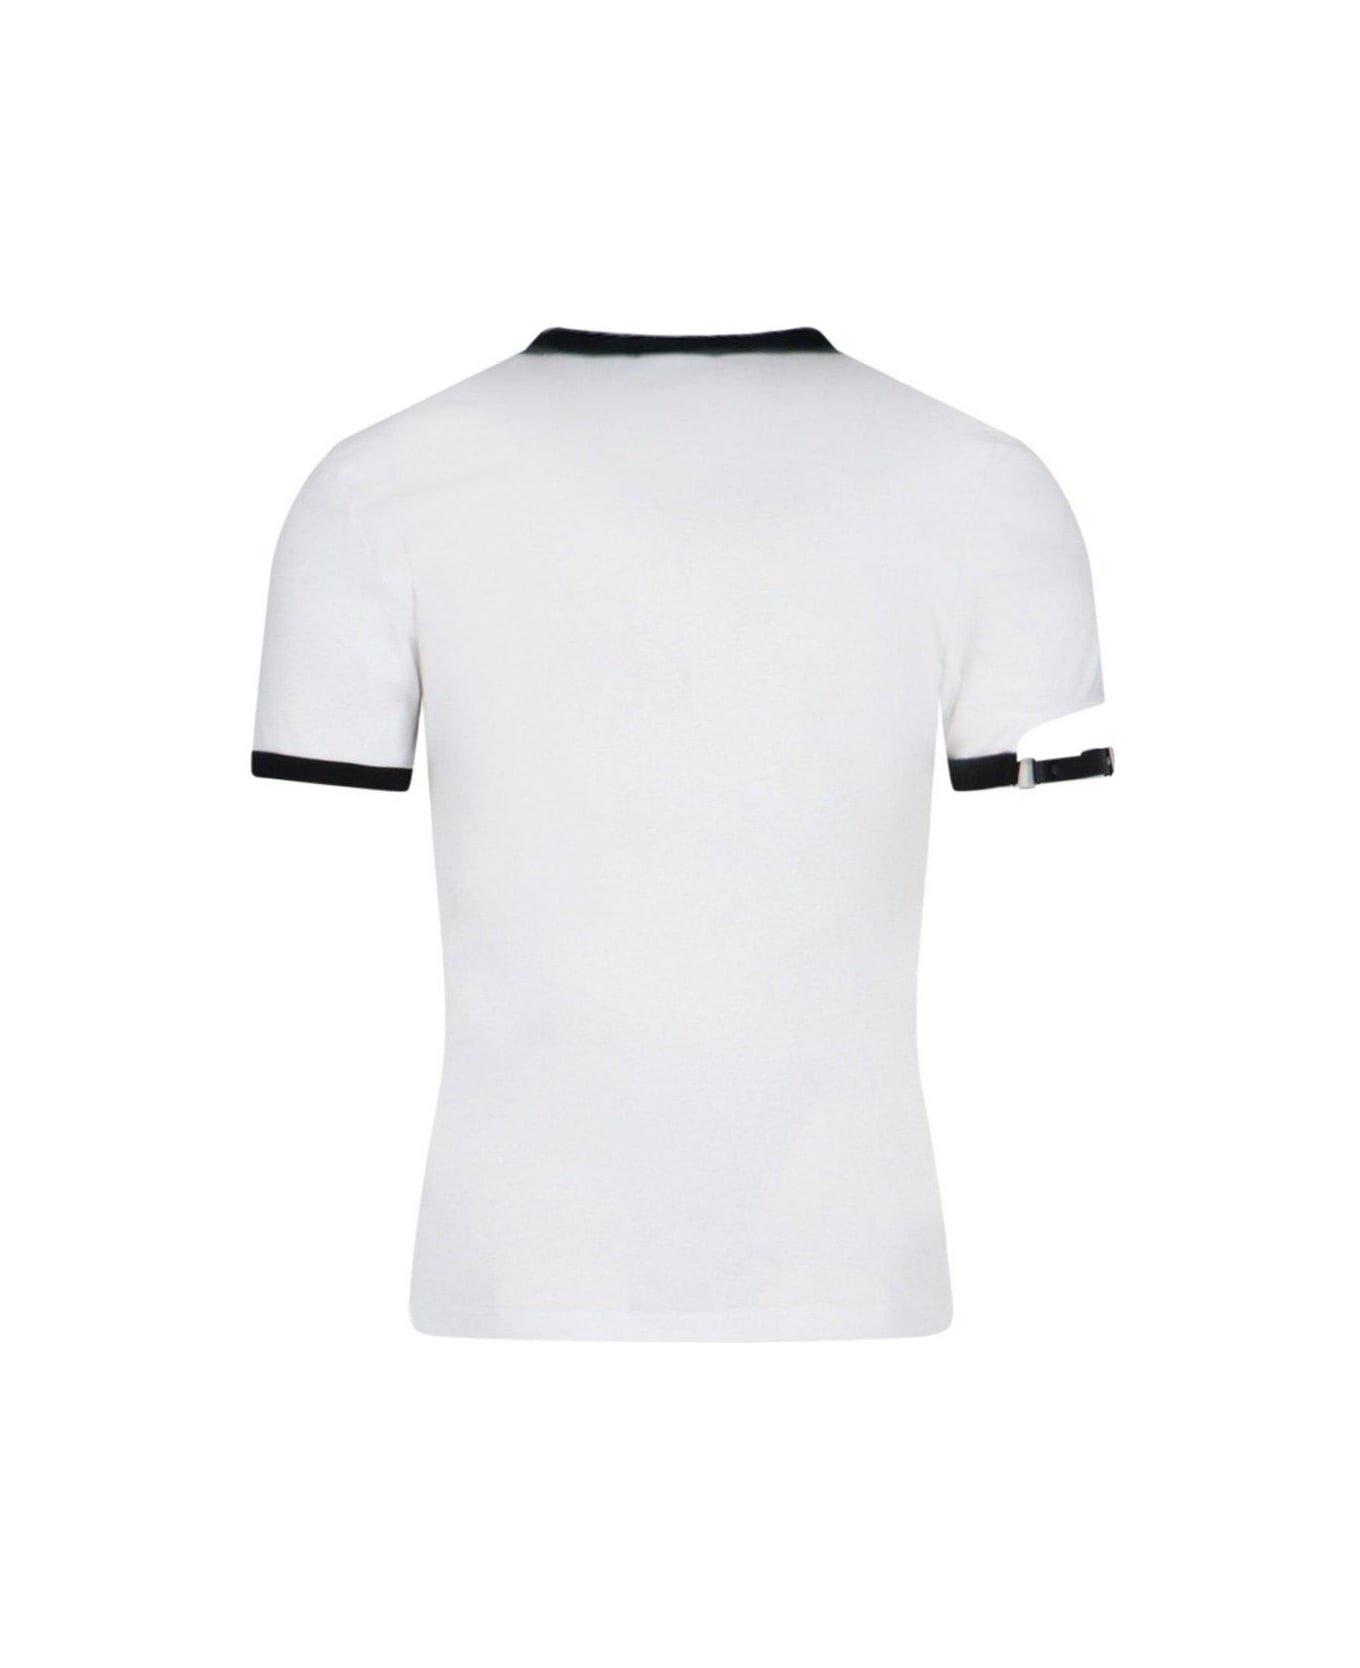 Courrèges Buckle Contrast T-shirt - White